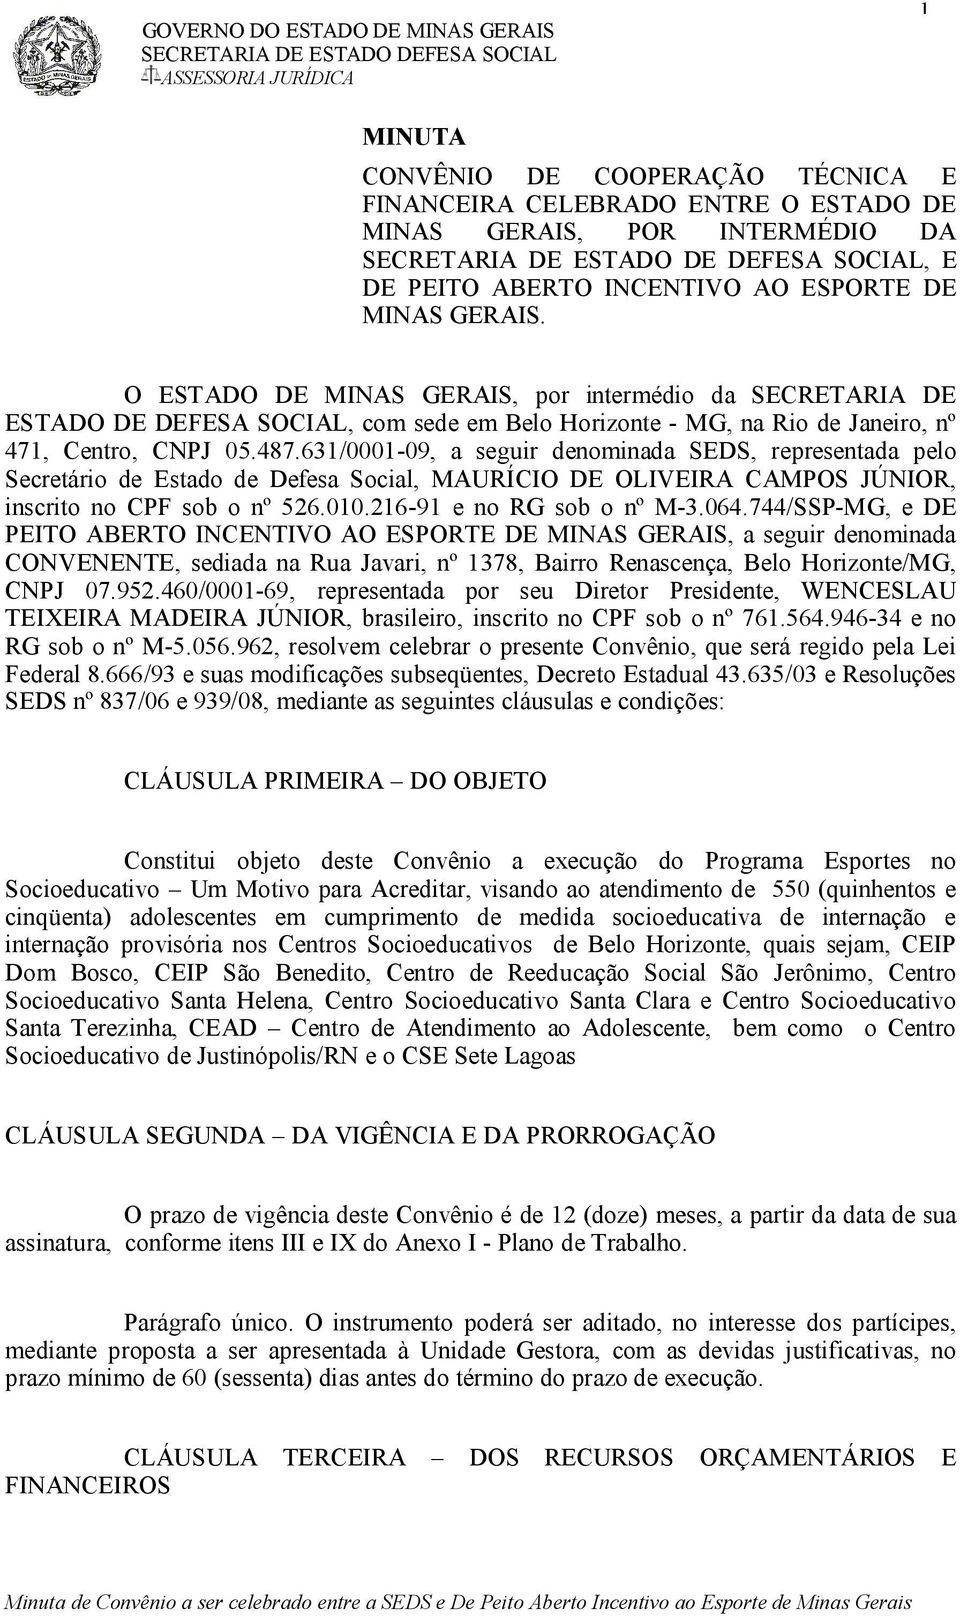 631/0001-09, a seguir denominada SEDS, representada pelo Secretário de Estado de Defesa Social, MAURÍCIO DE OLIVEIRA CAMPOS JÚNIOR, inscrito no CPF sob o nº 526.010.216-91 e no RG sob o nº M-3.064.